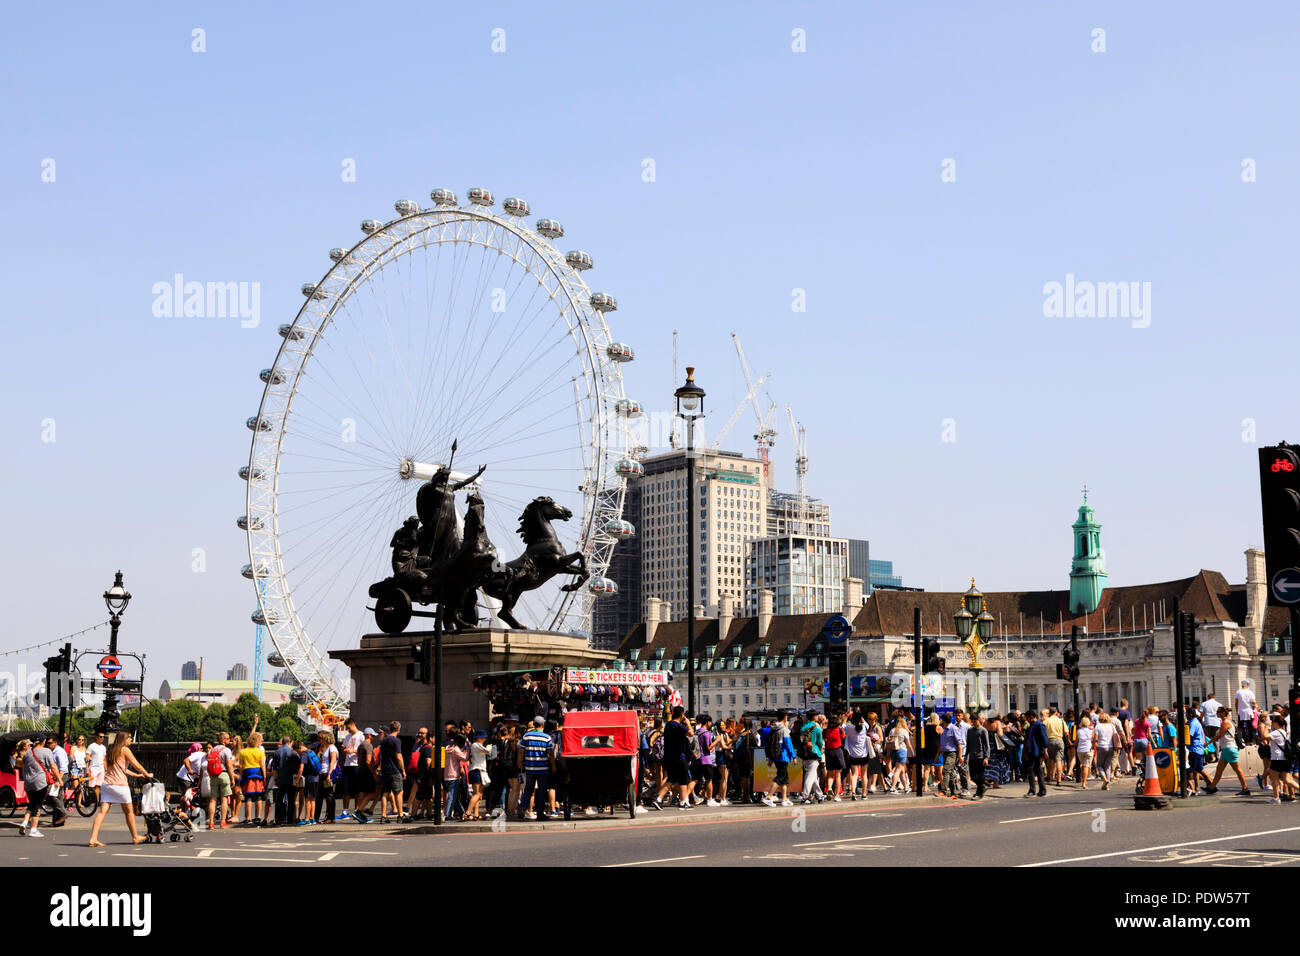 Touristenmassen auf die Westminster Bridge mit der Coca-Cola London Eye Riesenrad am Südufer der Themse, Lambeth, London, England Stockfoto